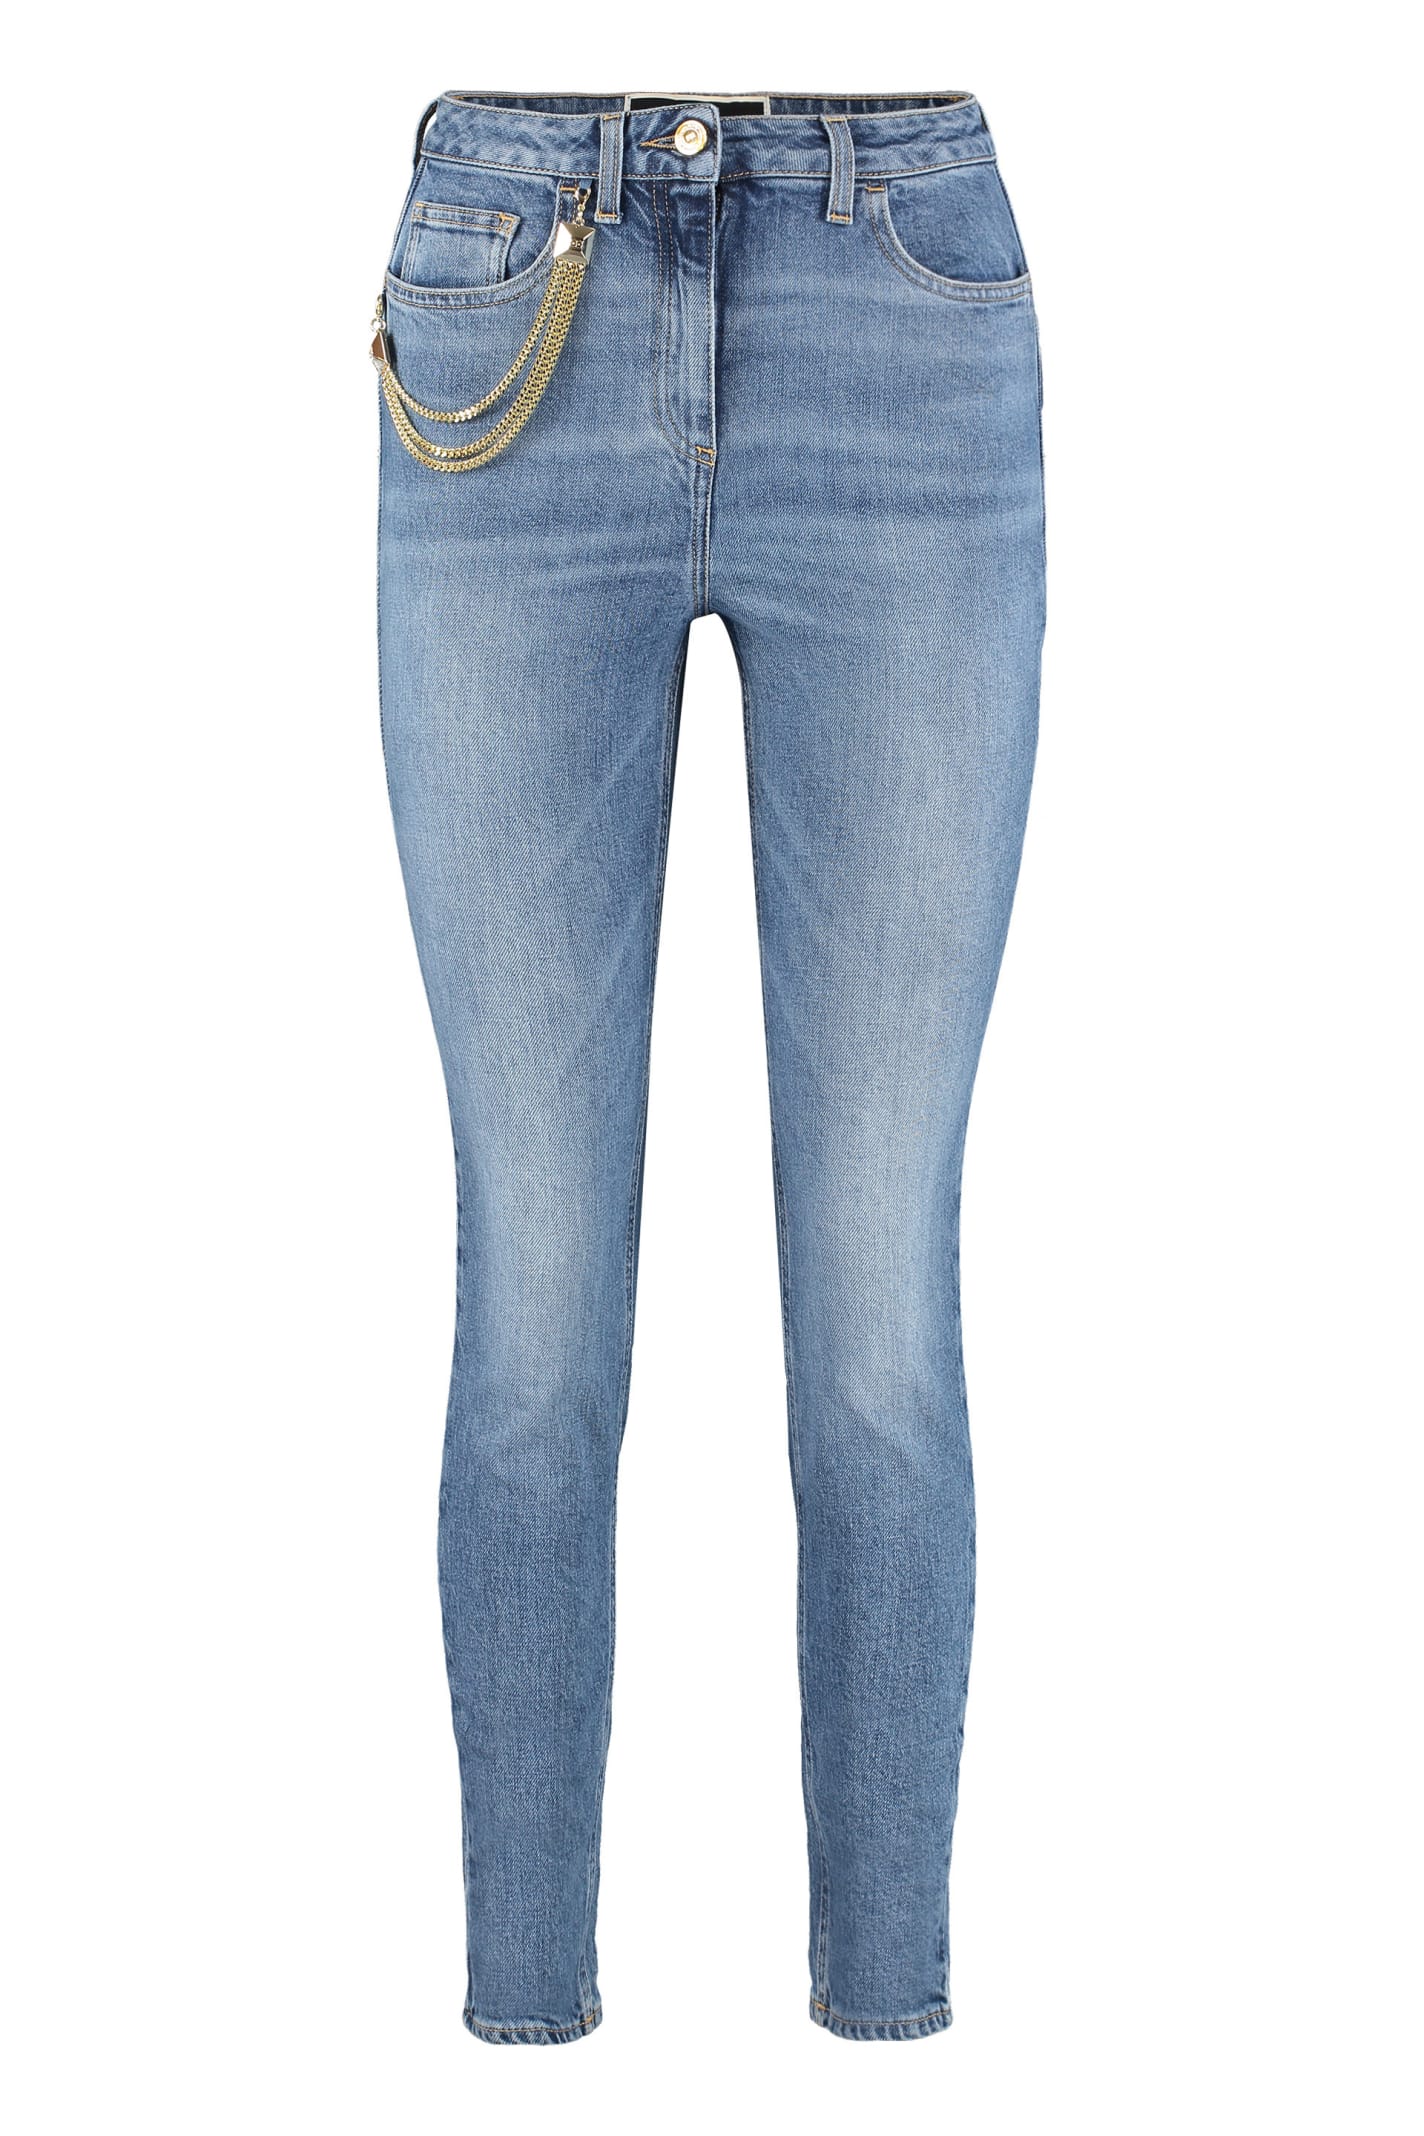 Elisabetta Franchi Super Skinny Fit Jeans